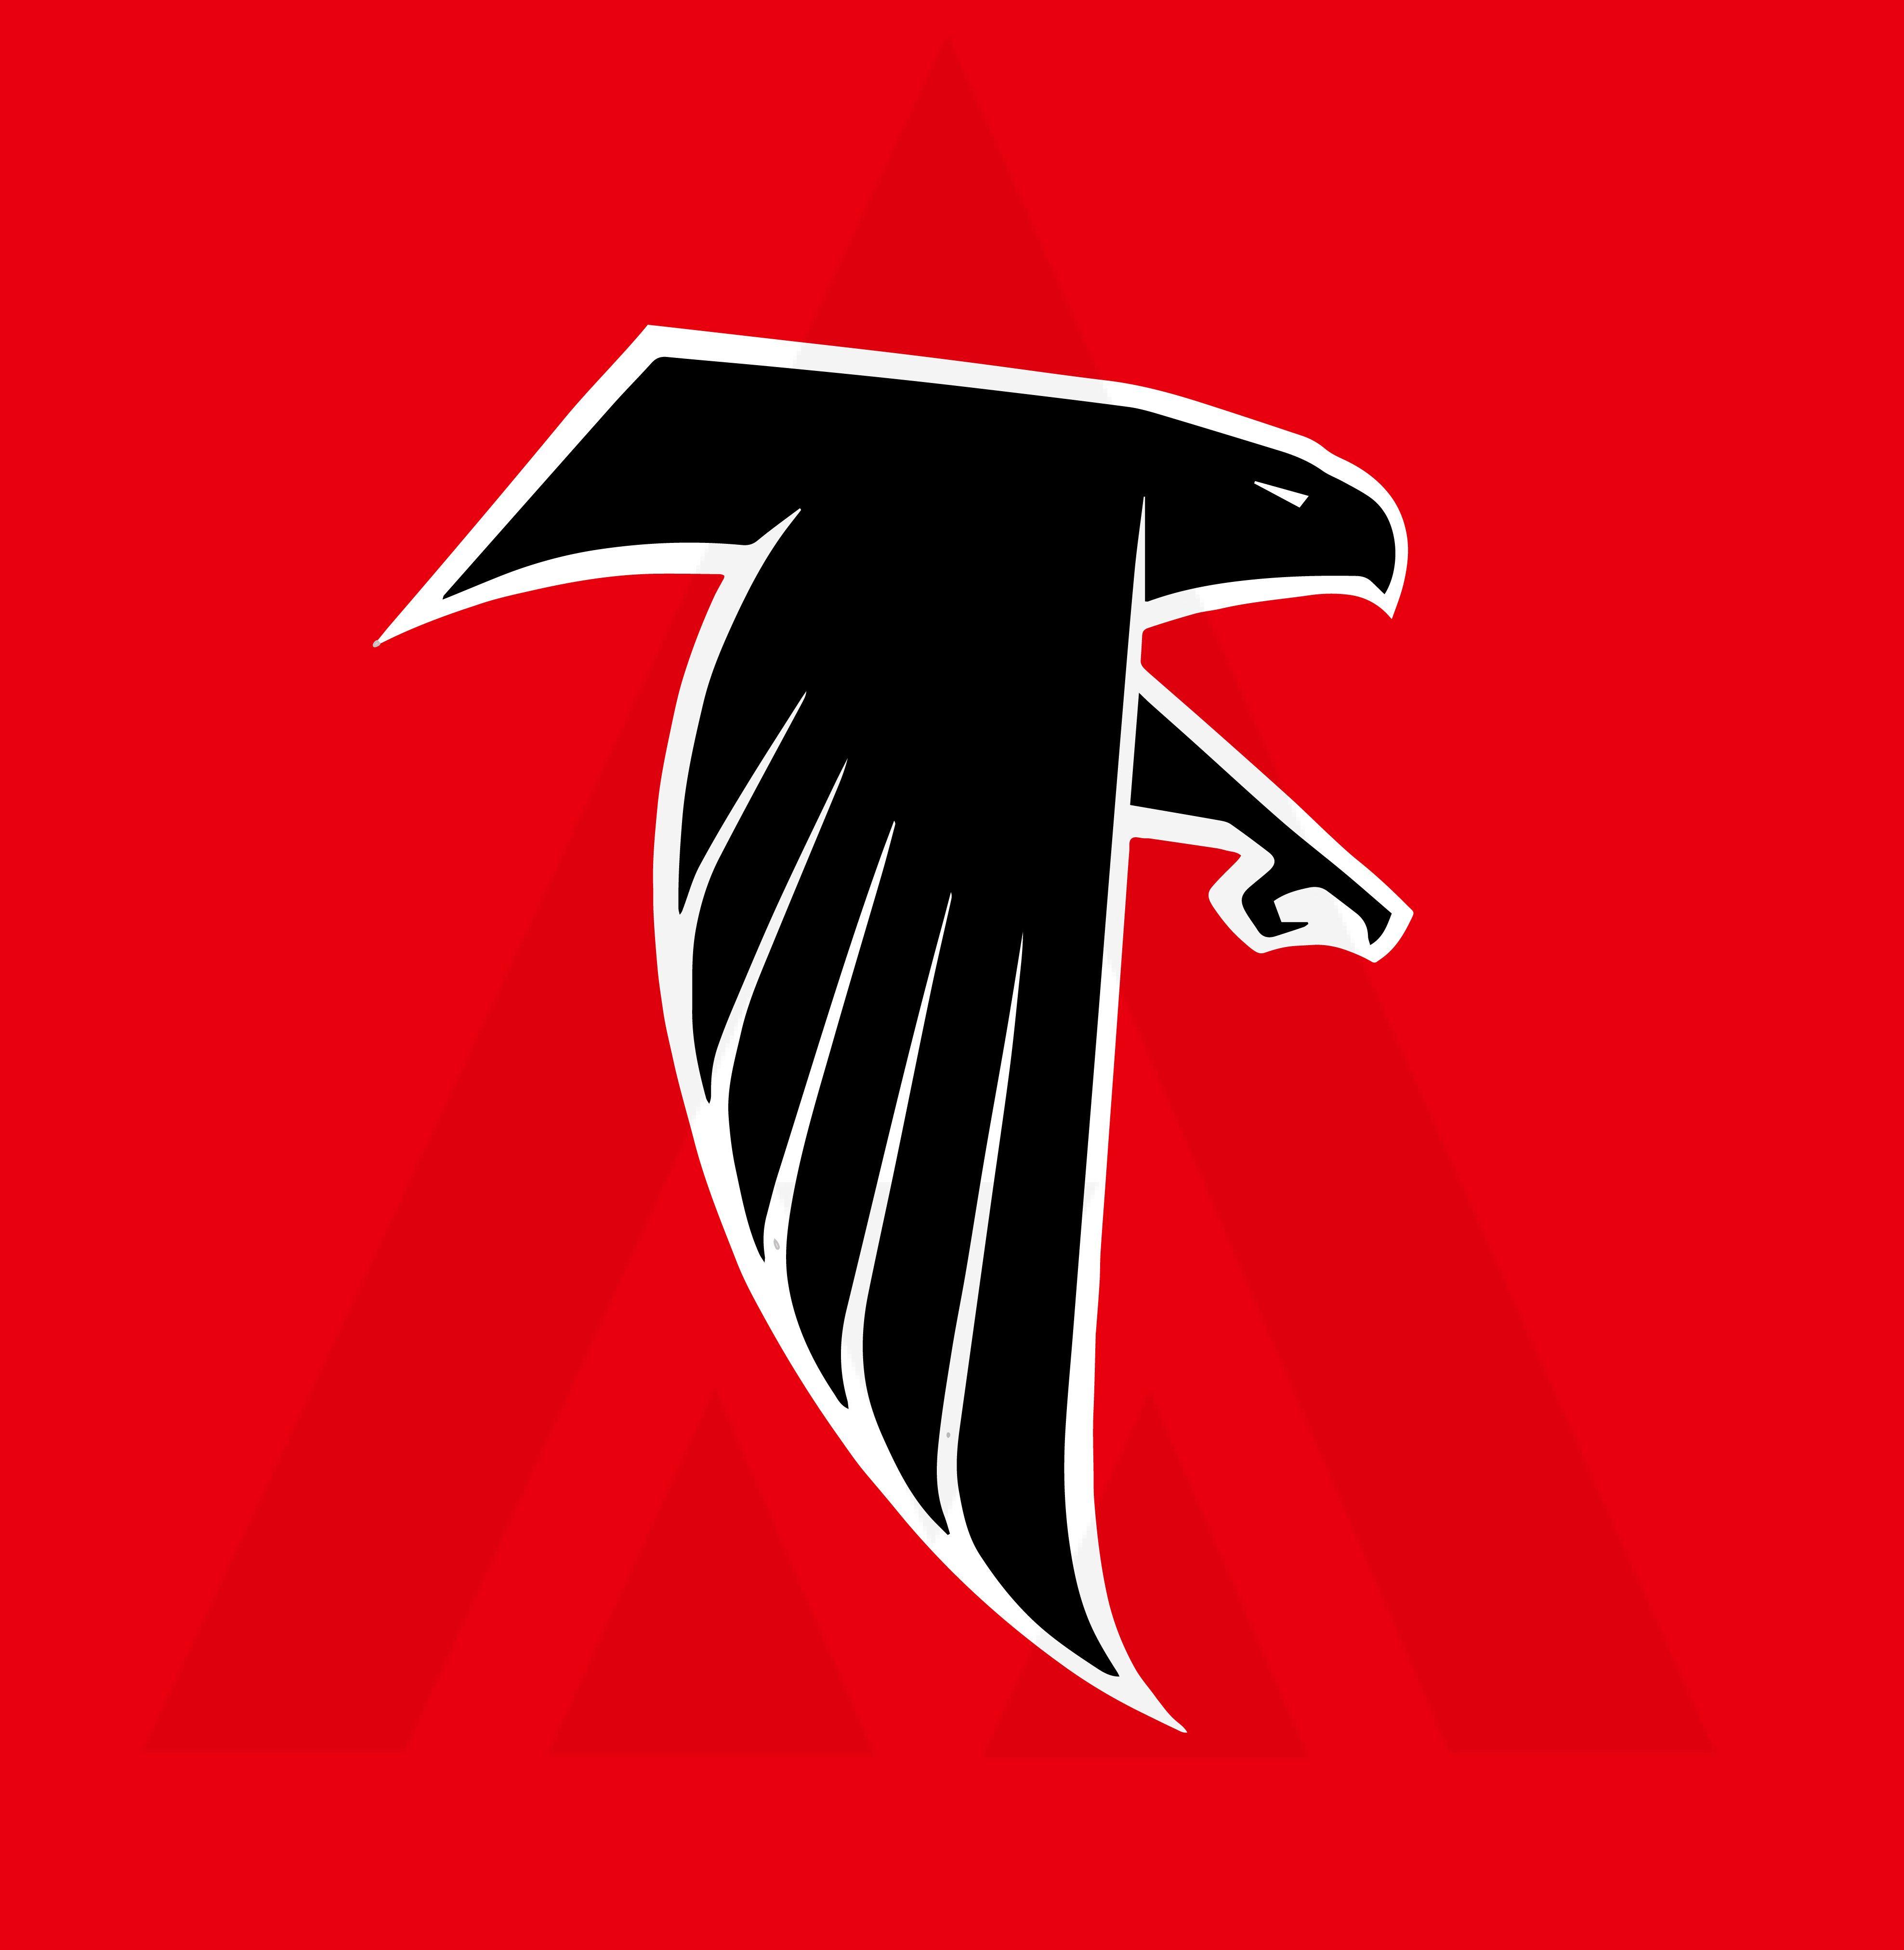 Falcons Logo - Atlanta Falcons Logo Concept - Concepts - Chris Creamer's Sports ...